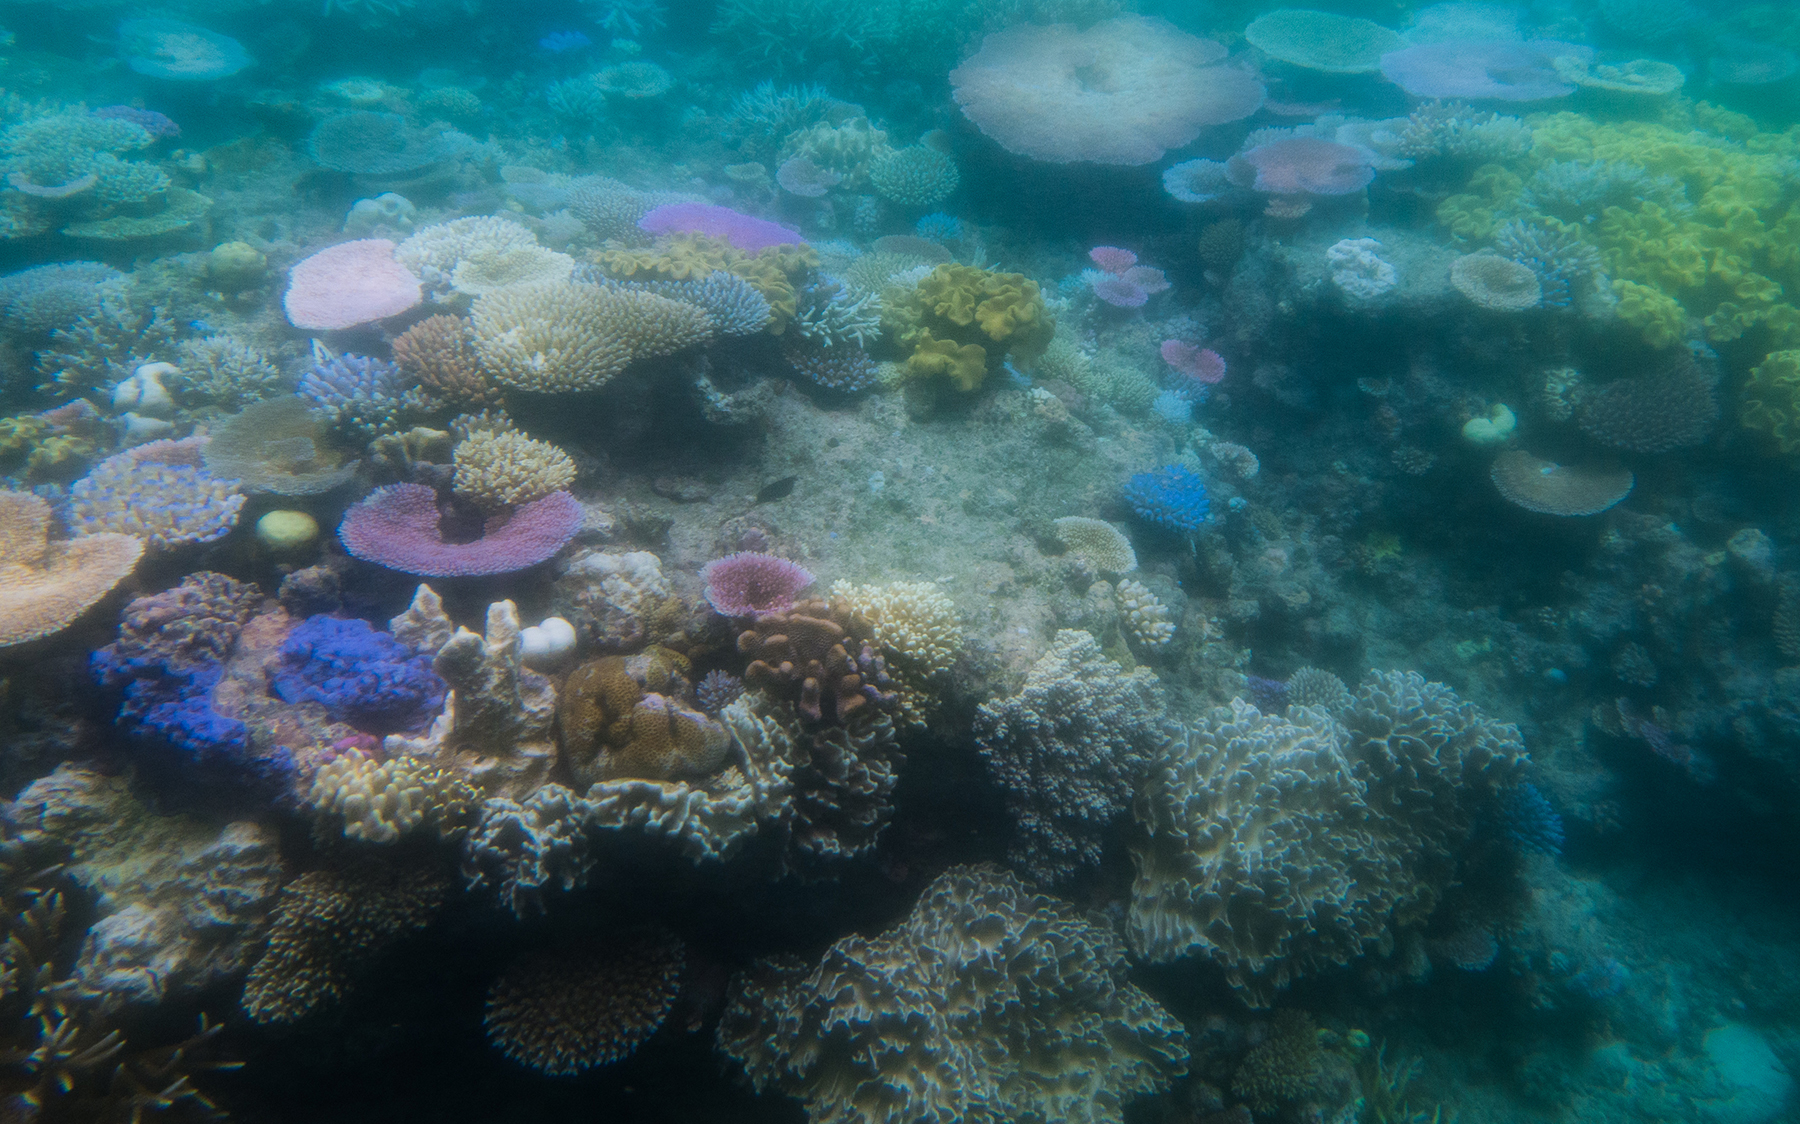 Ausbleichende Korallen im australischen Great Barrier Reef, 2016. Korallenriffe können unter Hitzestress ausbleichen und absterben. Bereits bei der mittlerweile wohl unvermeidlichen globalen Erwärmung um 1,5 Grad erwartet der Weltbiodiversitätsrat IPBES, dass 70 bis 90 % der Korallen verloren gehen, bei zwei Grad wären es 99 Prozent. Bild: Wikicommons, Jay Galvin